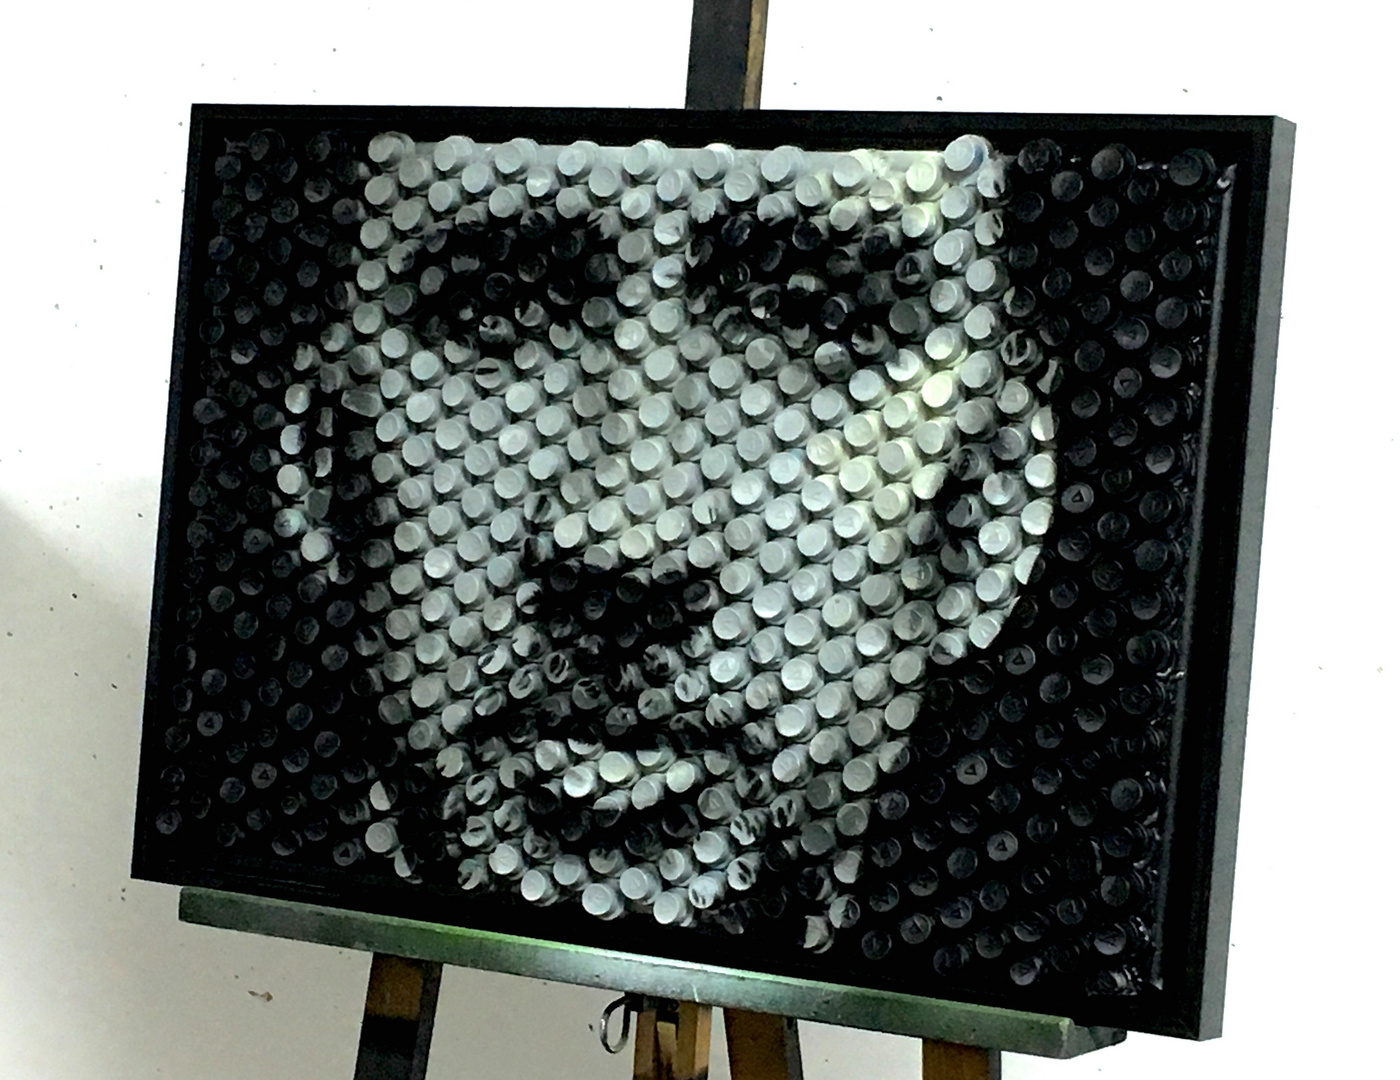 Nicolas Cage on spraycap canvas